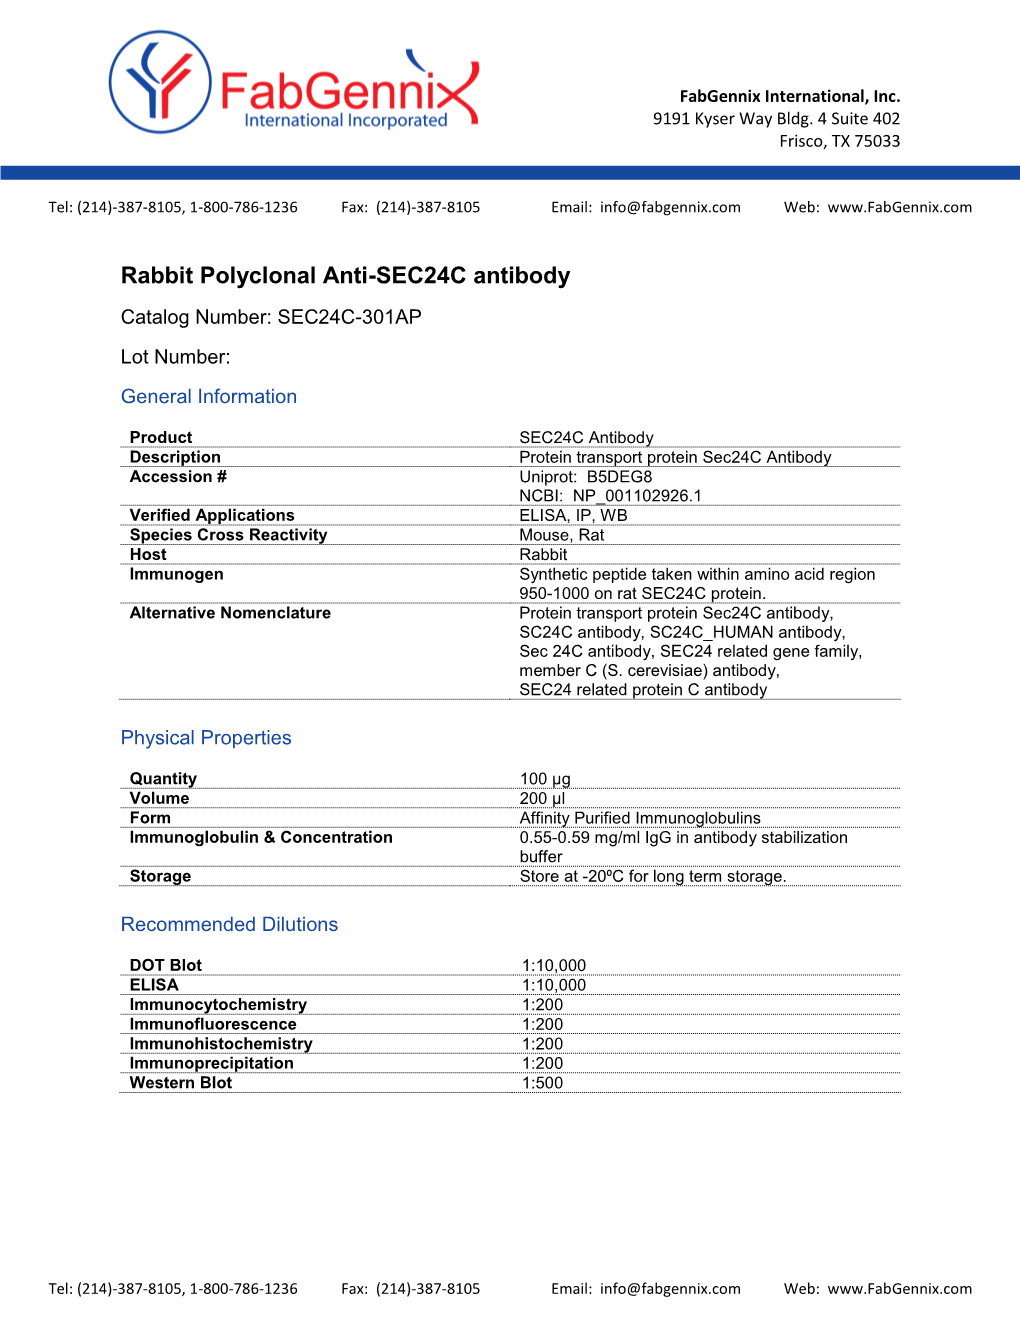 SEC24C Antibody Catalog Number: SEC24C-301AP Lot Number: General Information